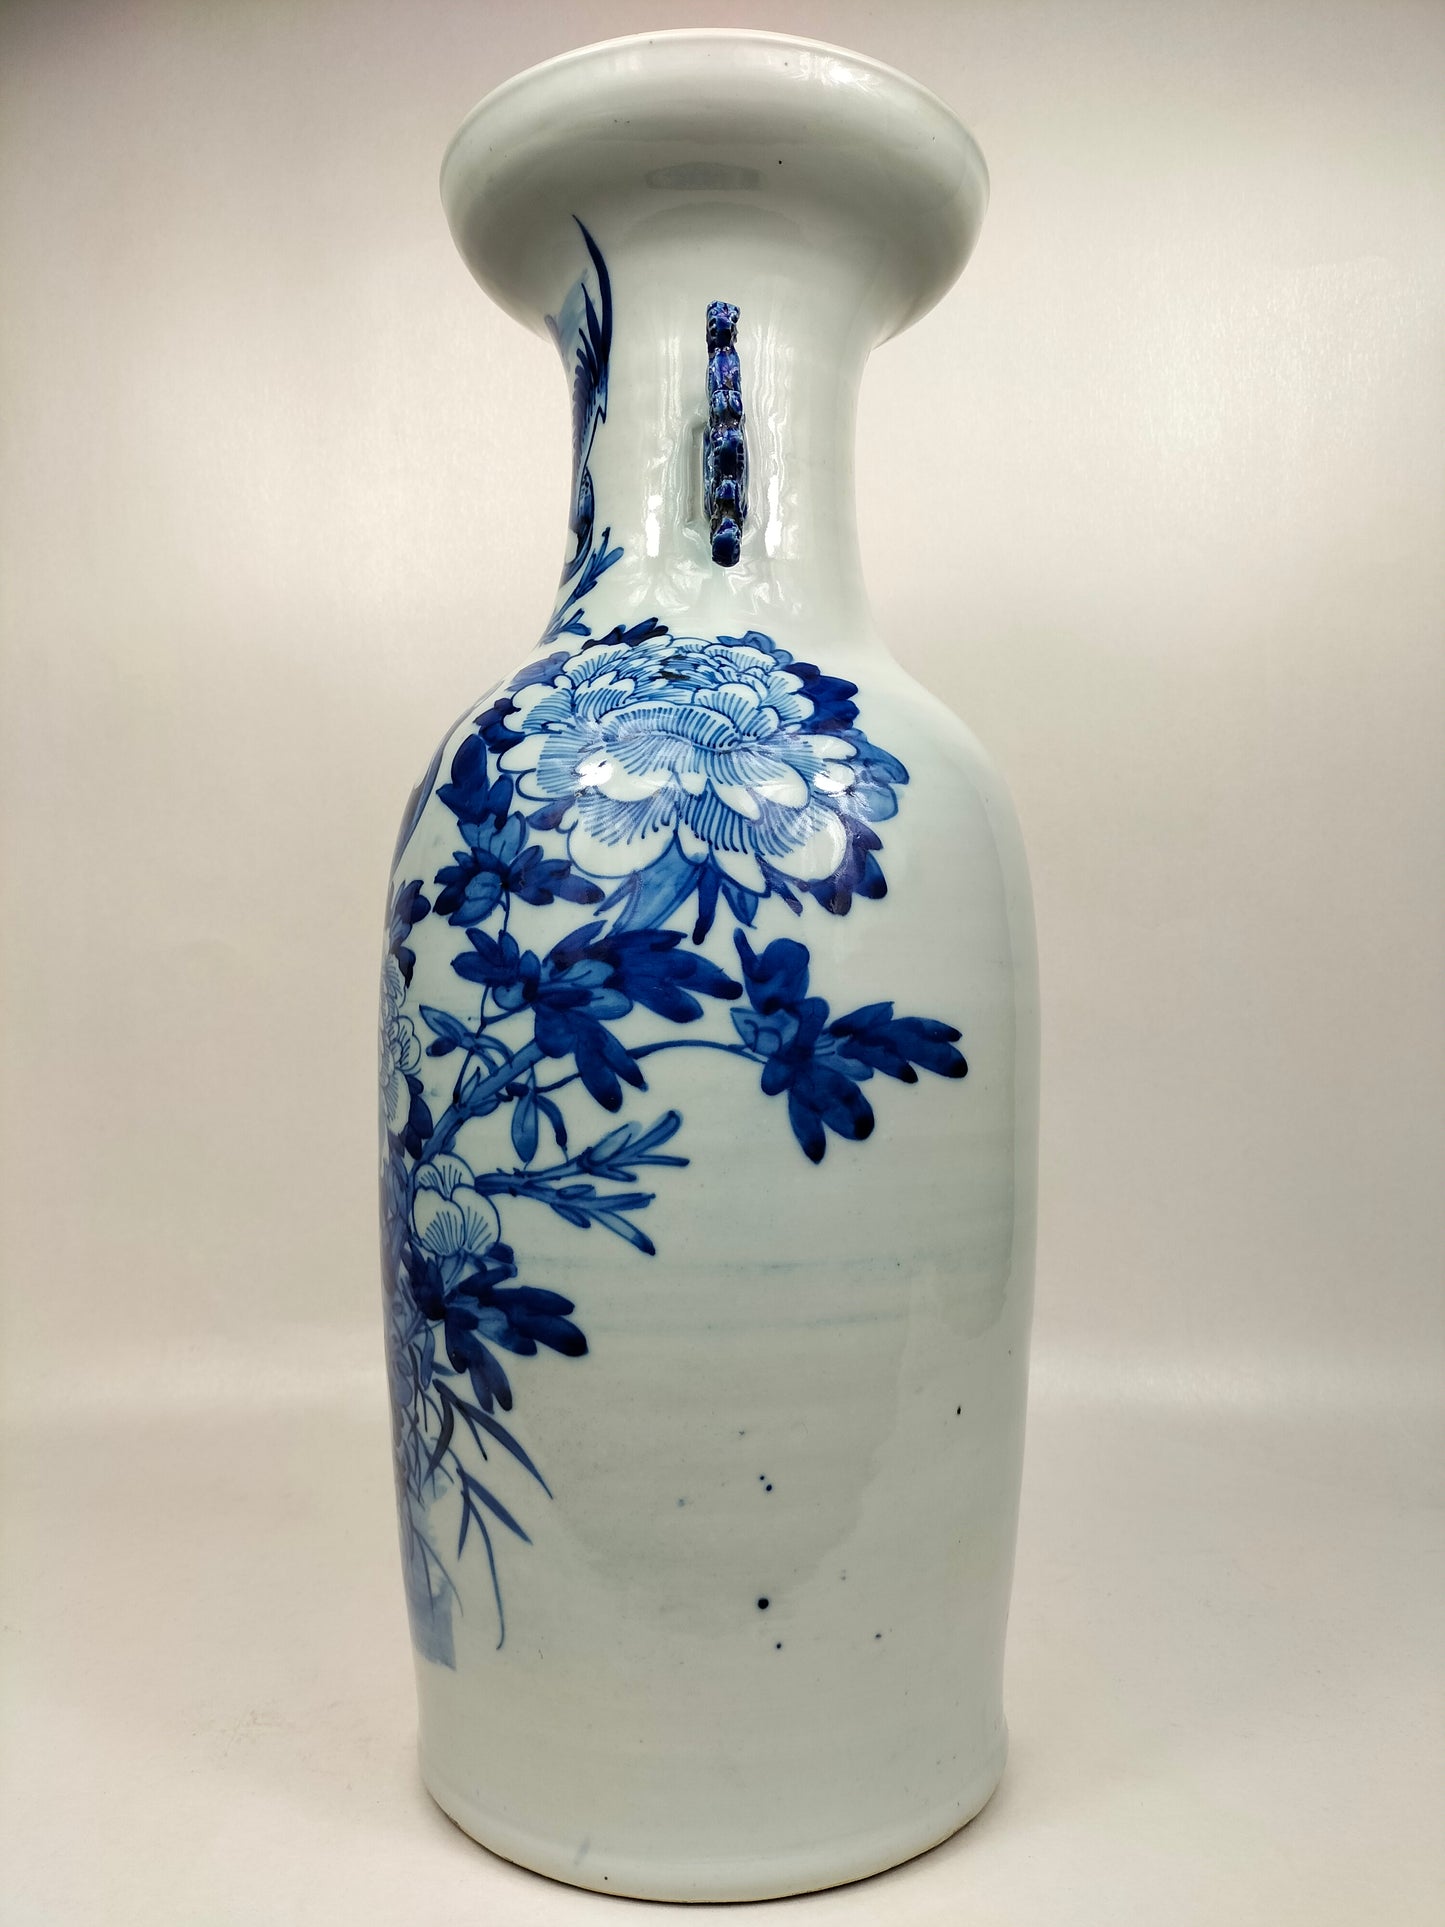 Grande vaso chinês antigo com guindastes e flores // Azul e branco - Dinastia Qing - século XIX